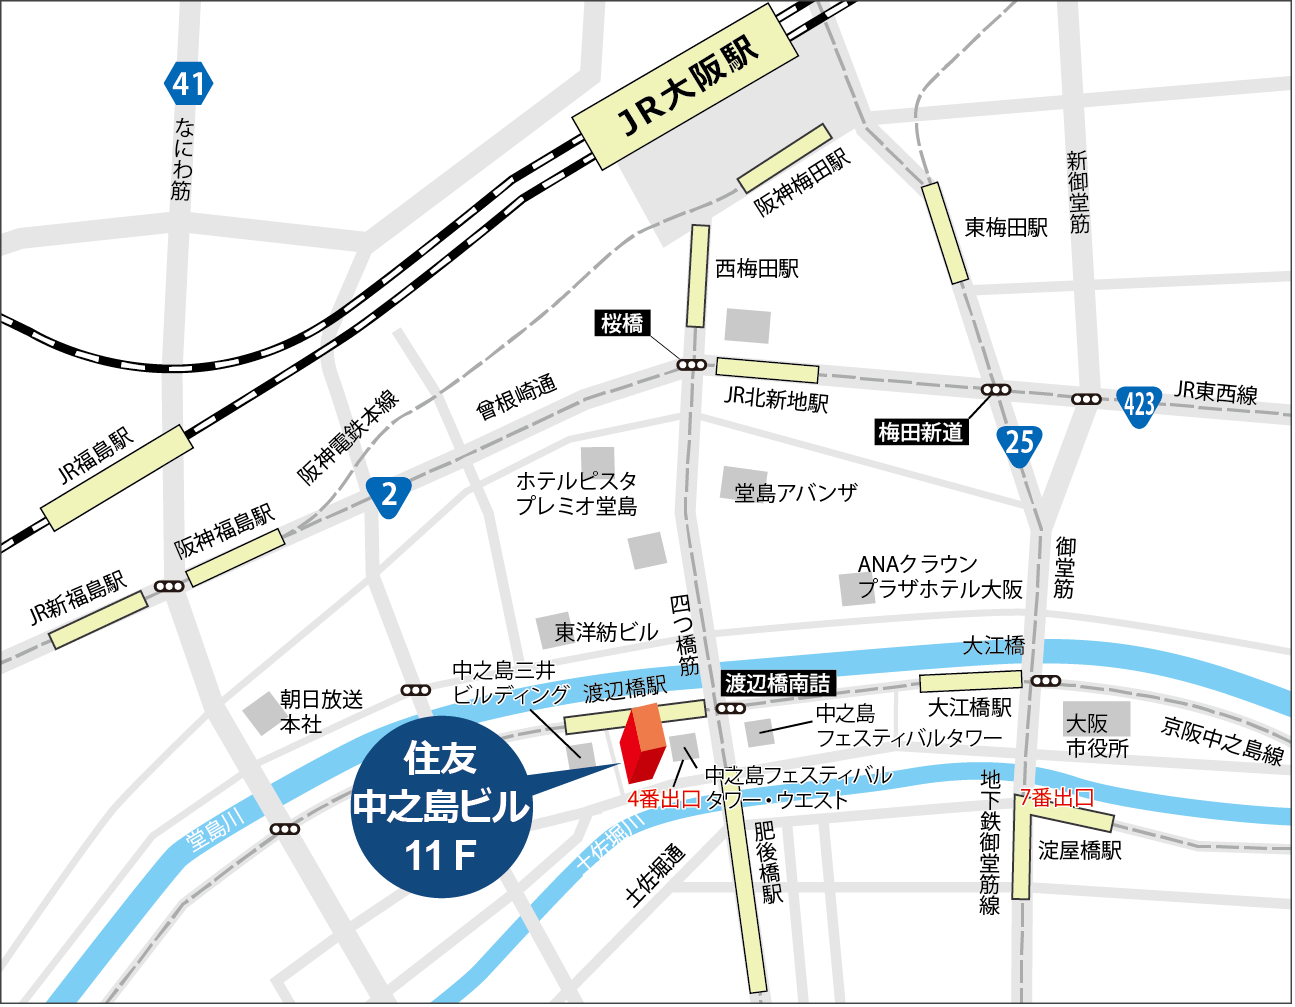 大阪会場(大阪ラーニングセンター)詳細地図